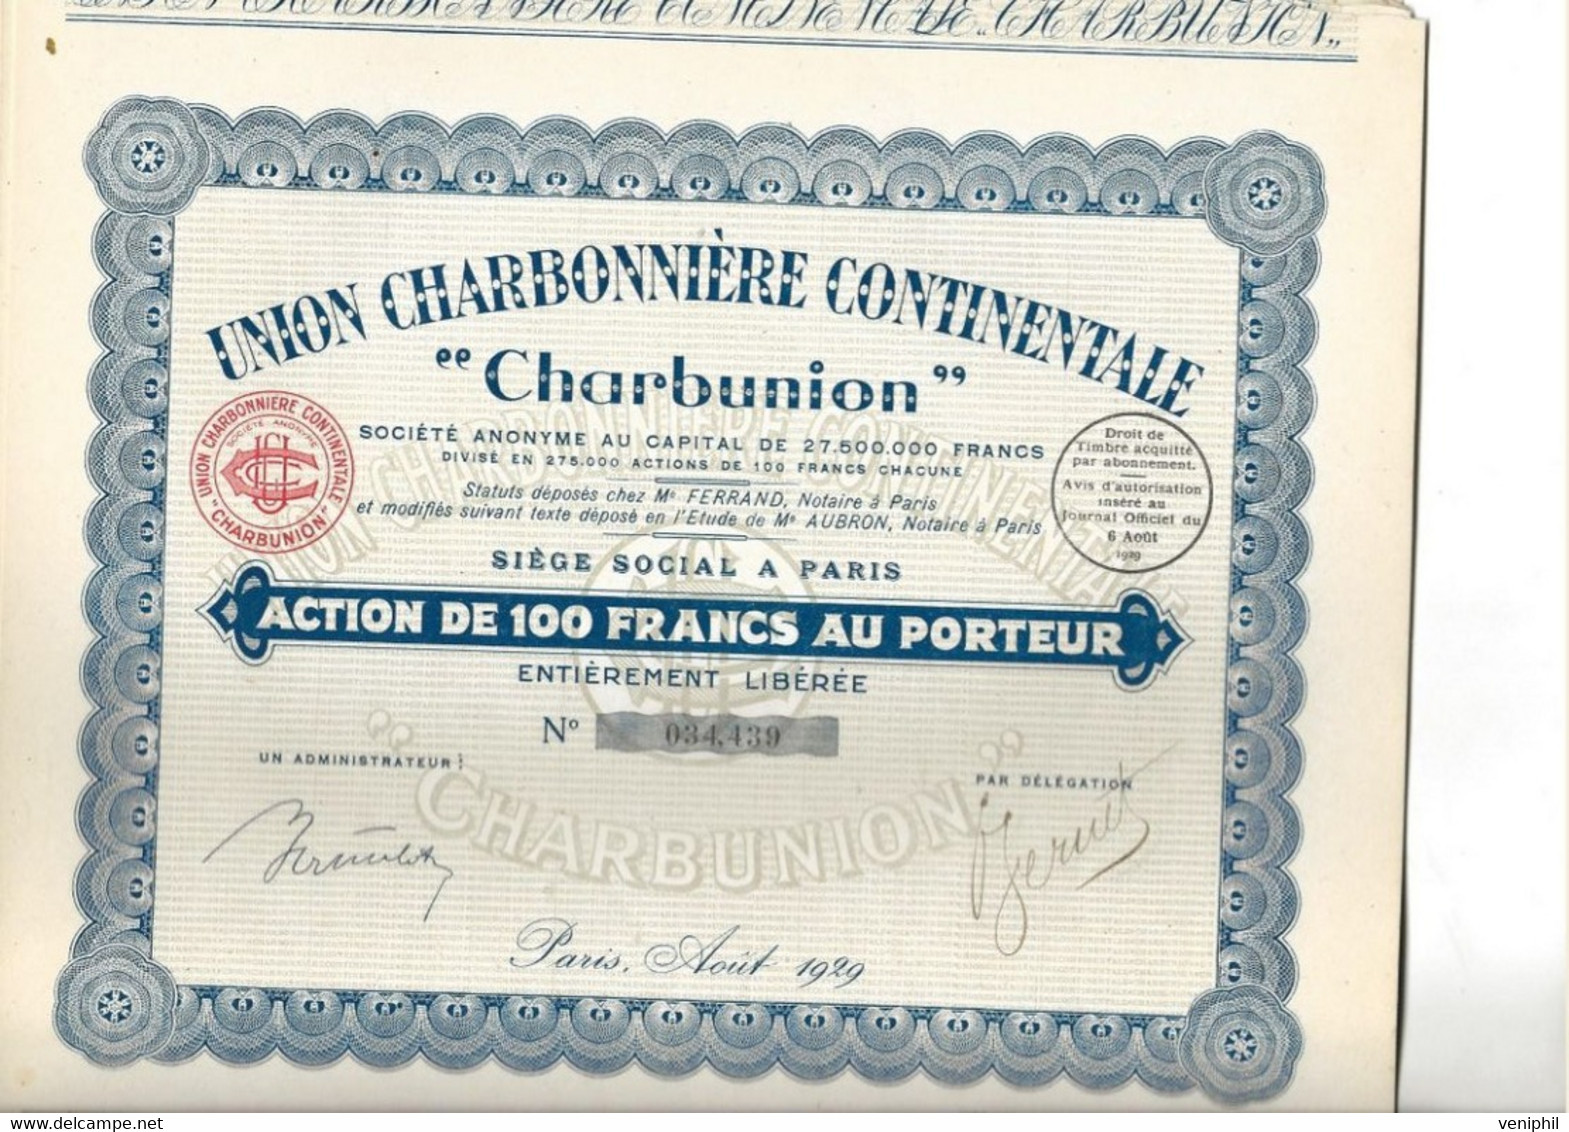 UNION CHARBONNIERE CONTINENTALE " CHARBUNION " - LOT DE 12 ACTIONS DE 100 FRS - ANNEE 1929 - Mineral